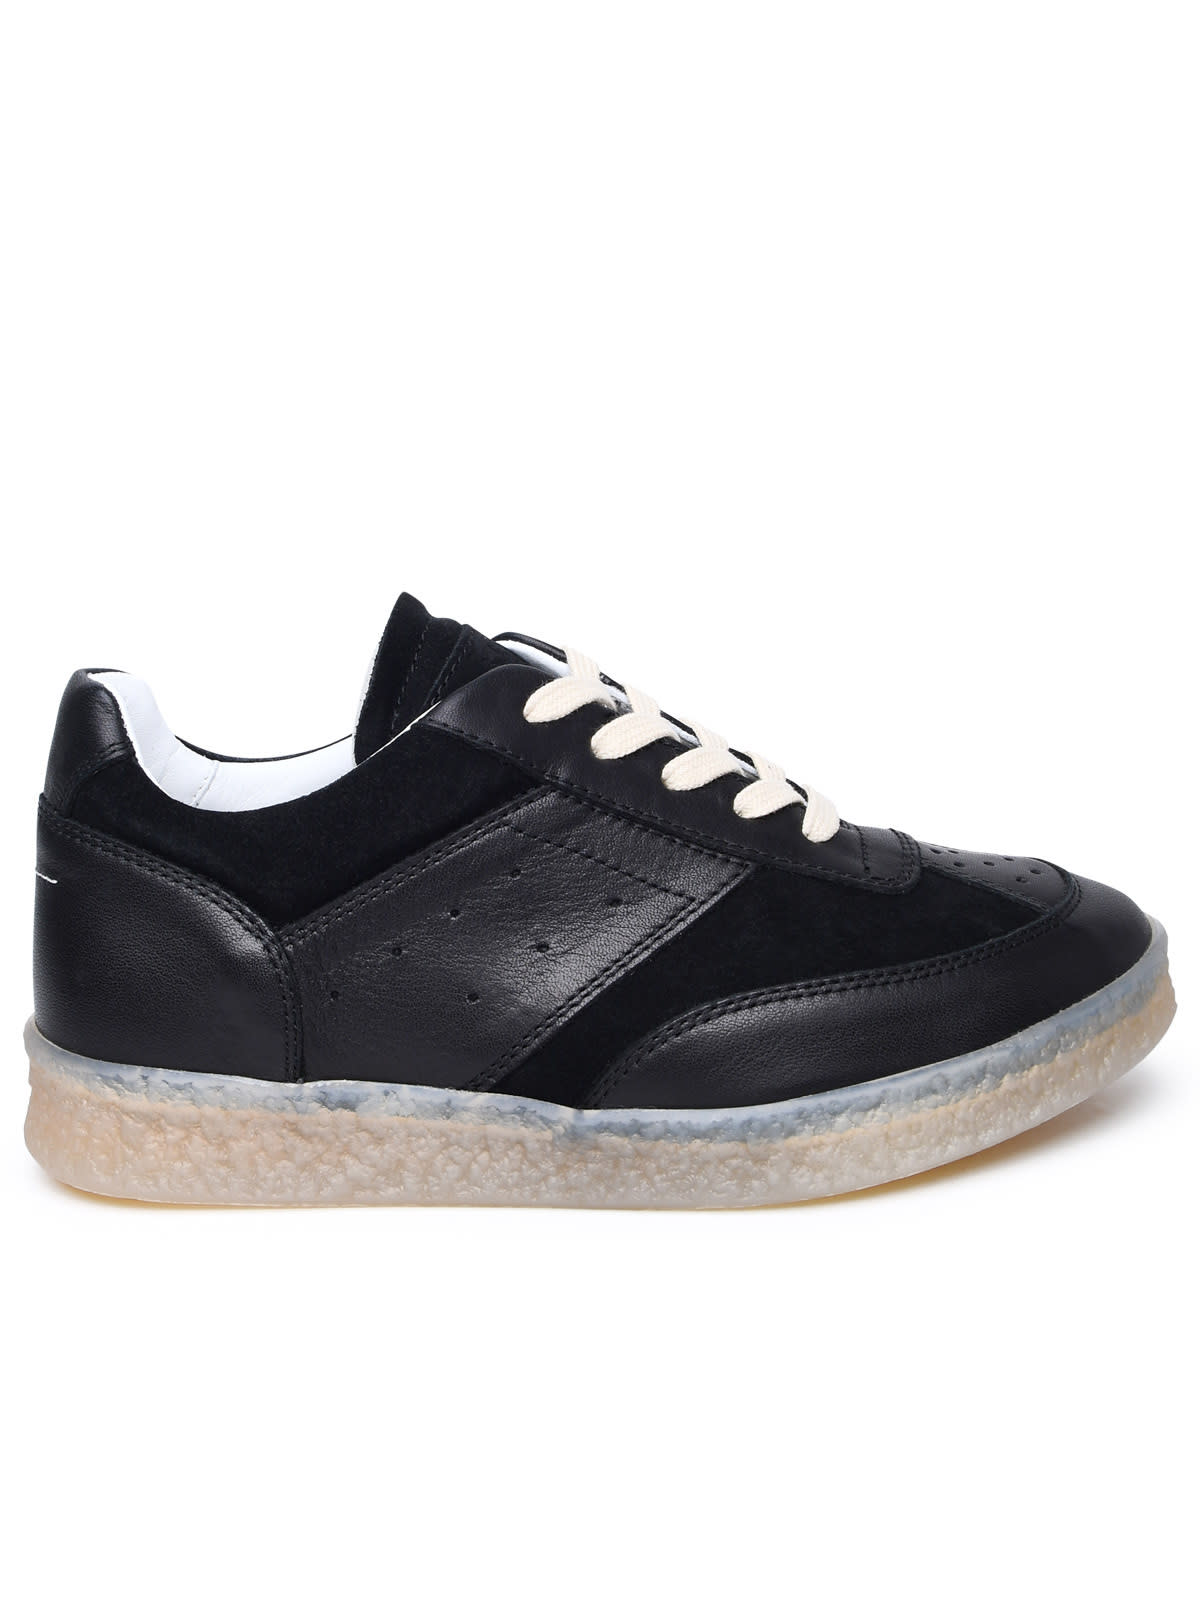 Shop Mm6 Maison Margiela Black Leather Sneakers